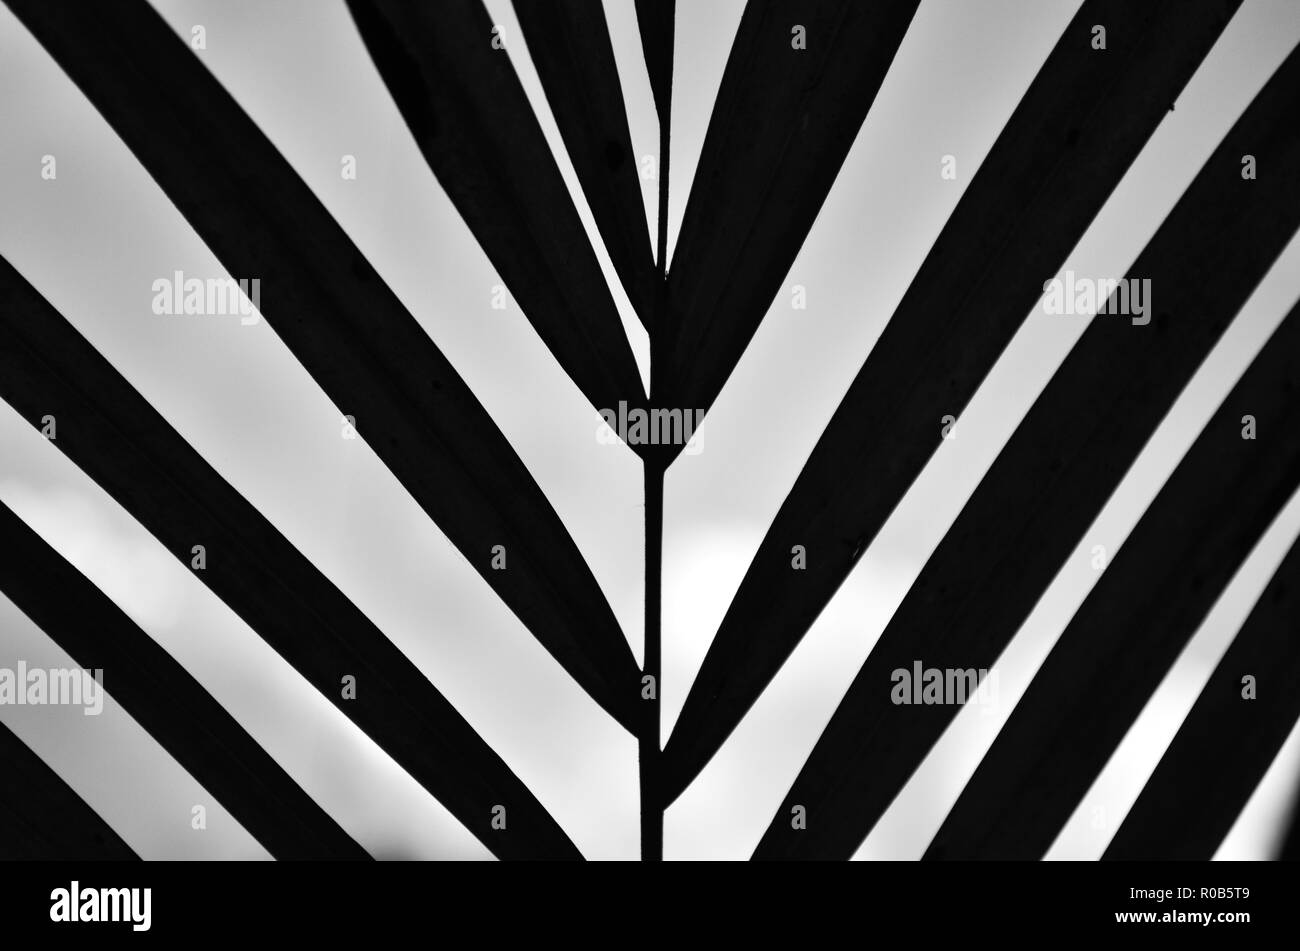 Symmetrische Komposition von diagonalen Linien, einer Pflanze, in Schwarz und Weiß und gegen das Licht, interessante und geheimnisvolle Bild über das Jenseits Stockfoto